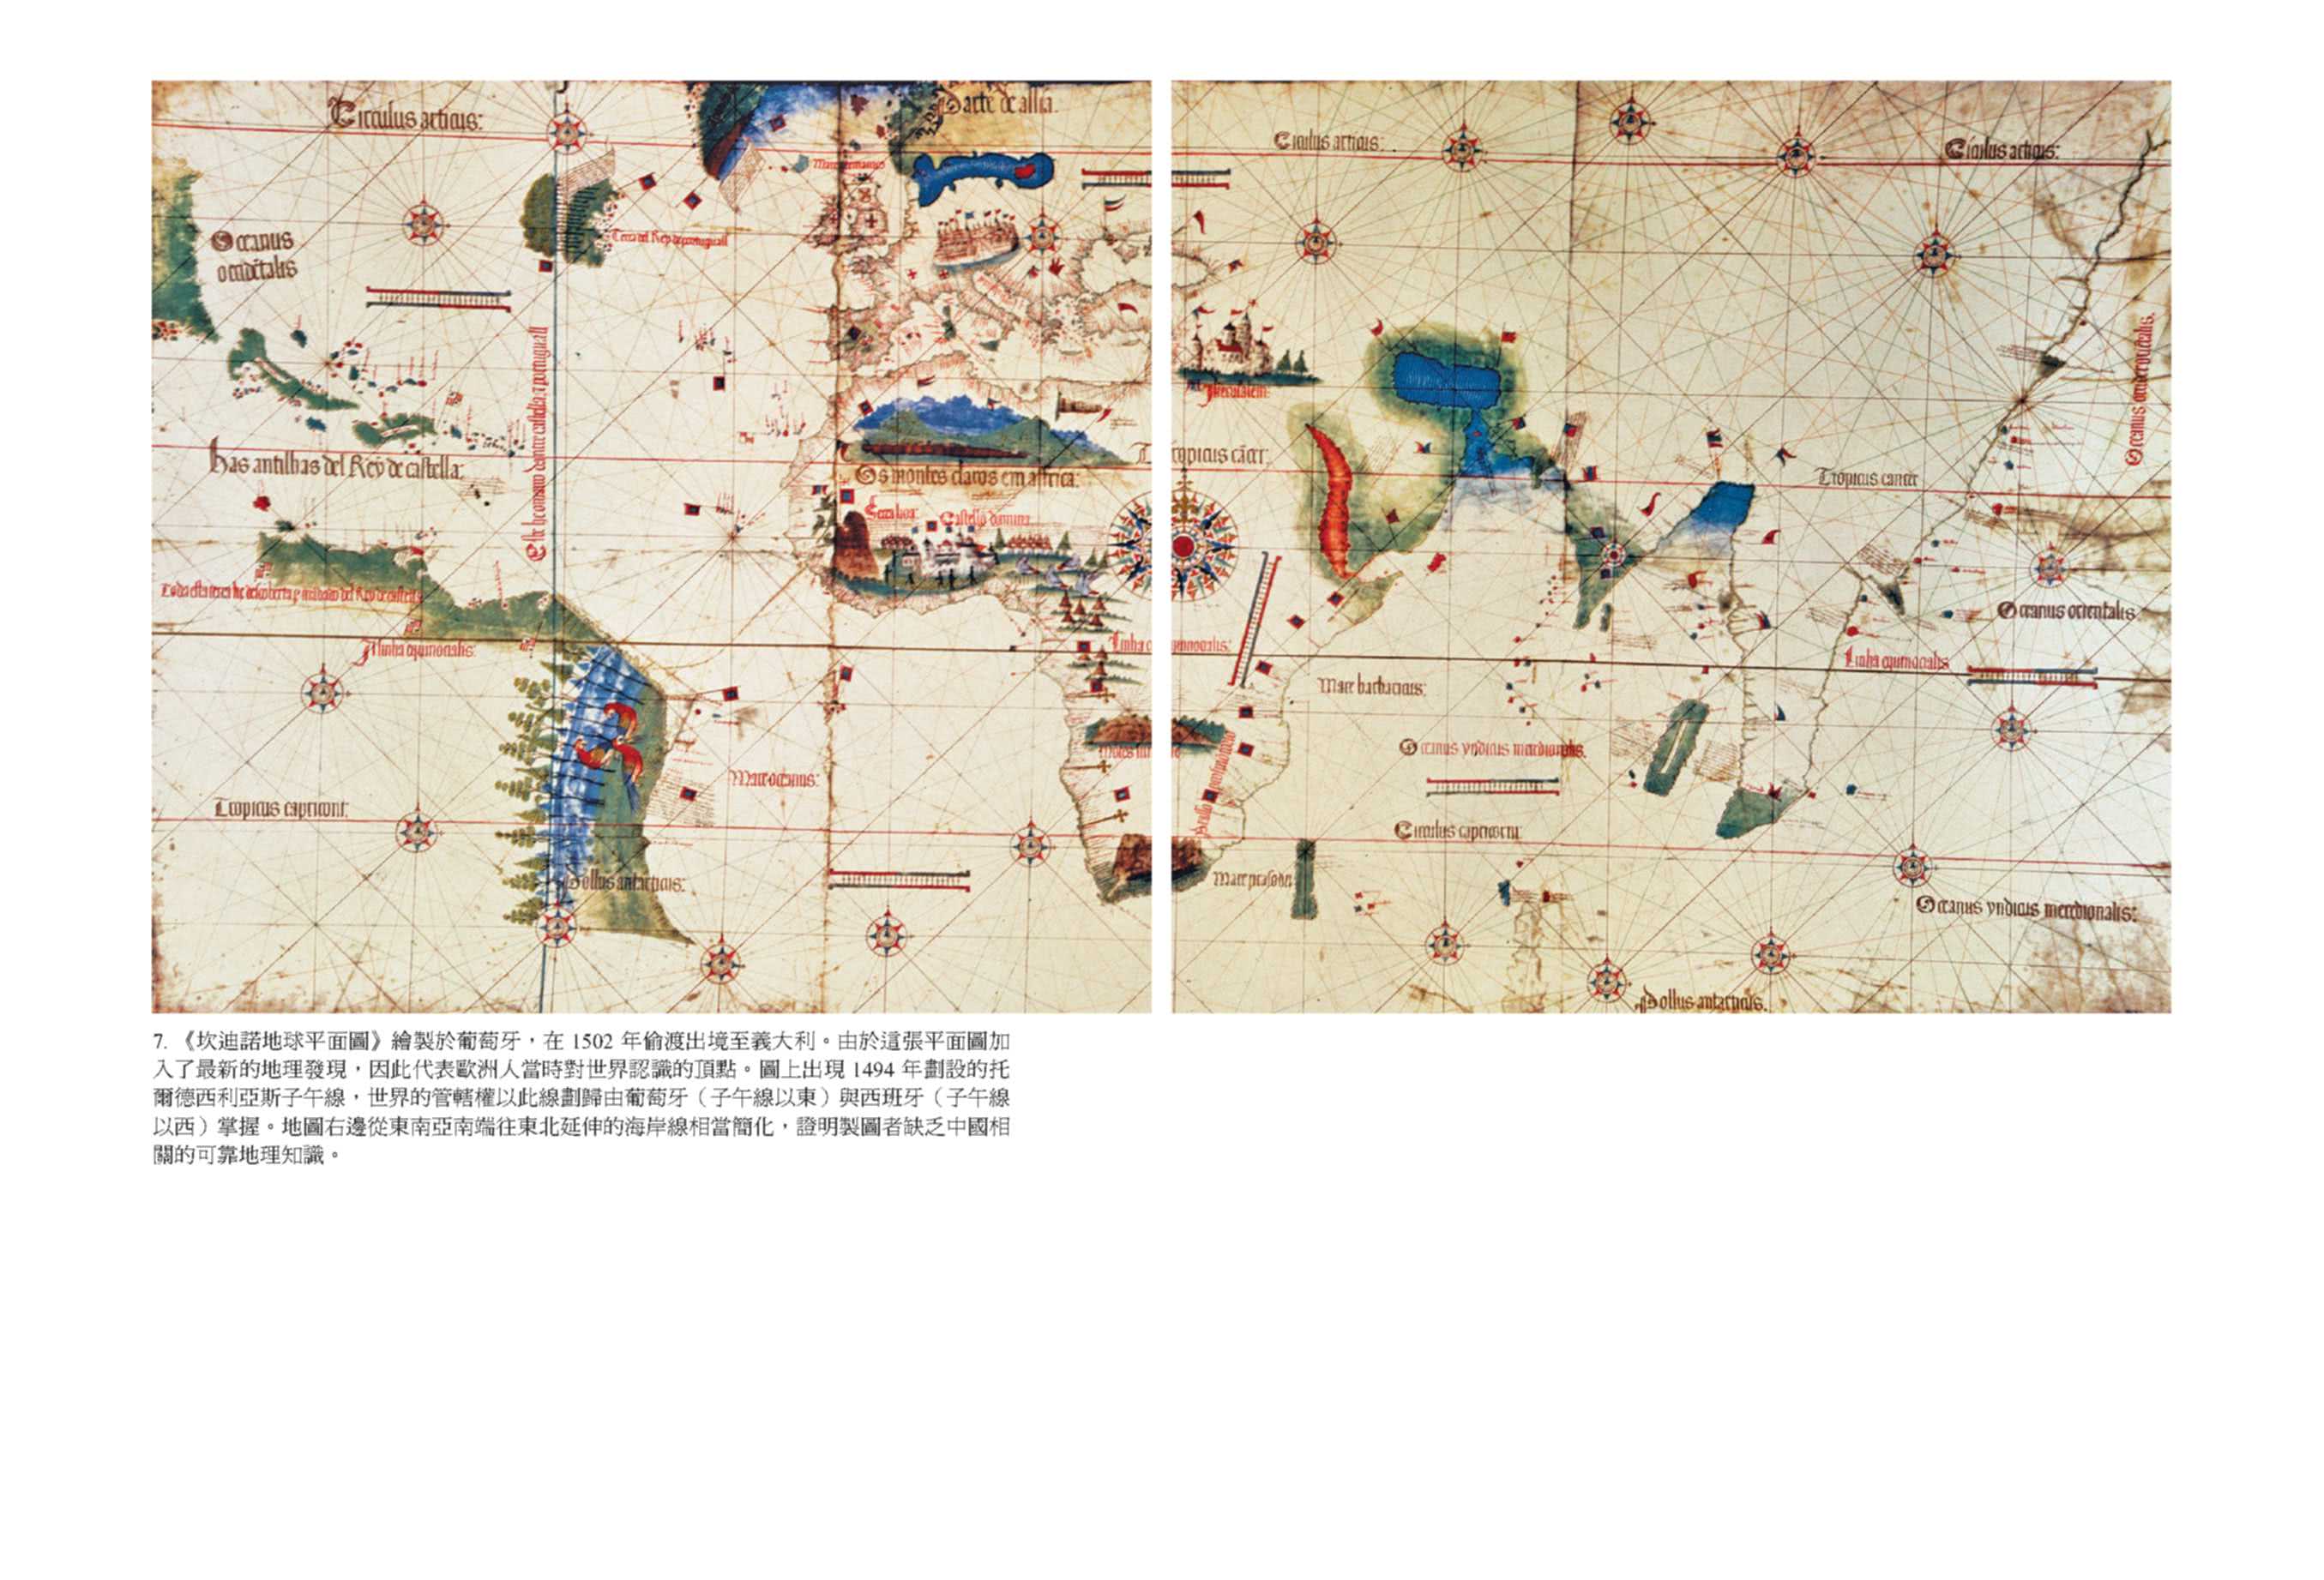 忽必烈的獵豹：八百年來的中國與世界